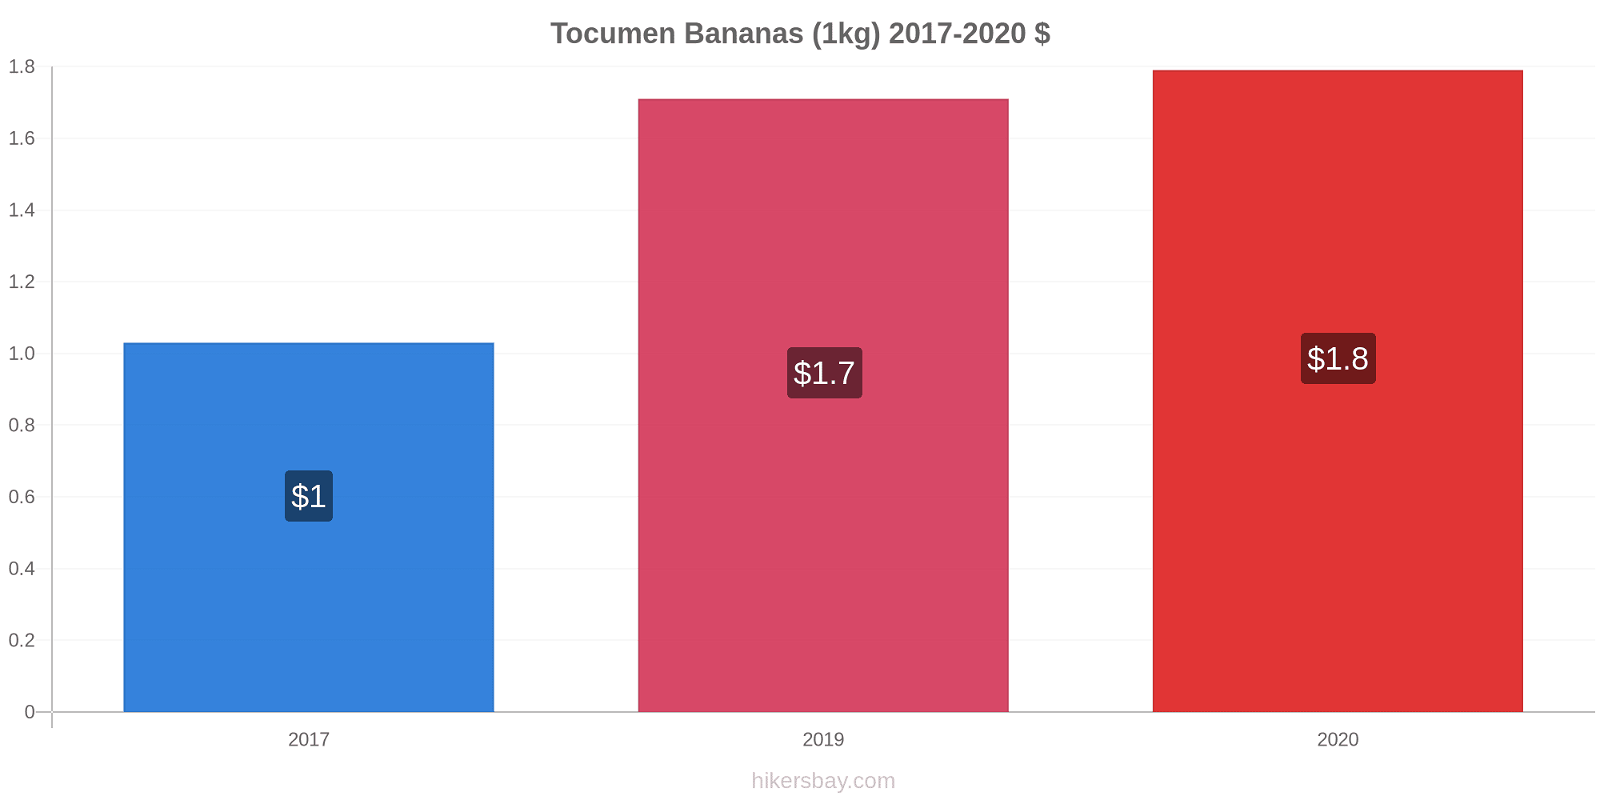 Tocumen price changes Bananas (1kg) hikersbay.com